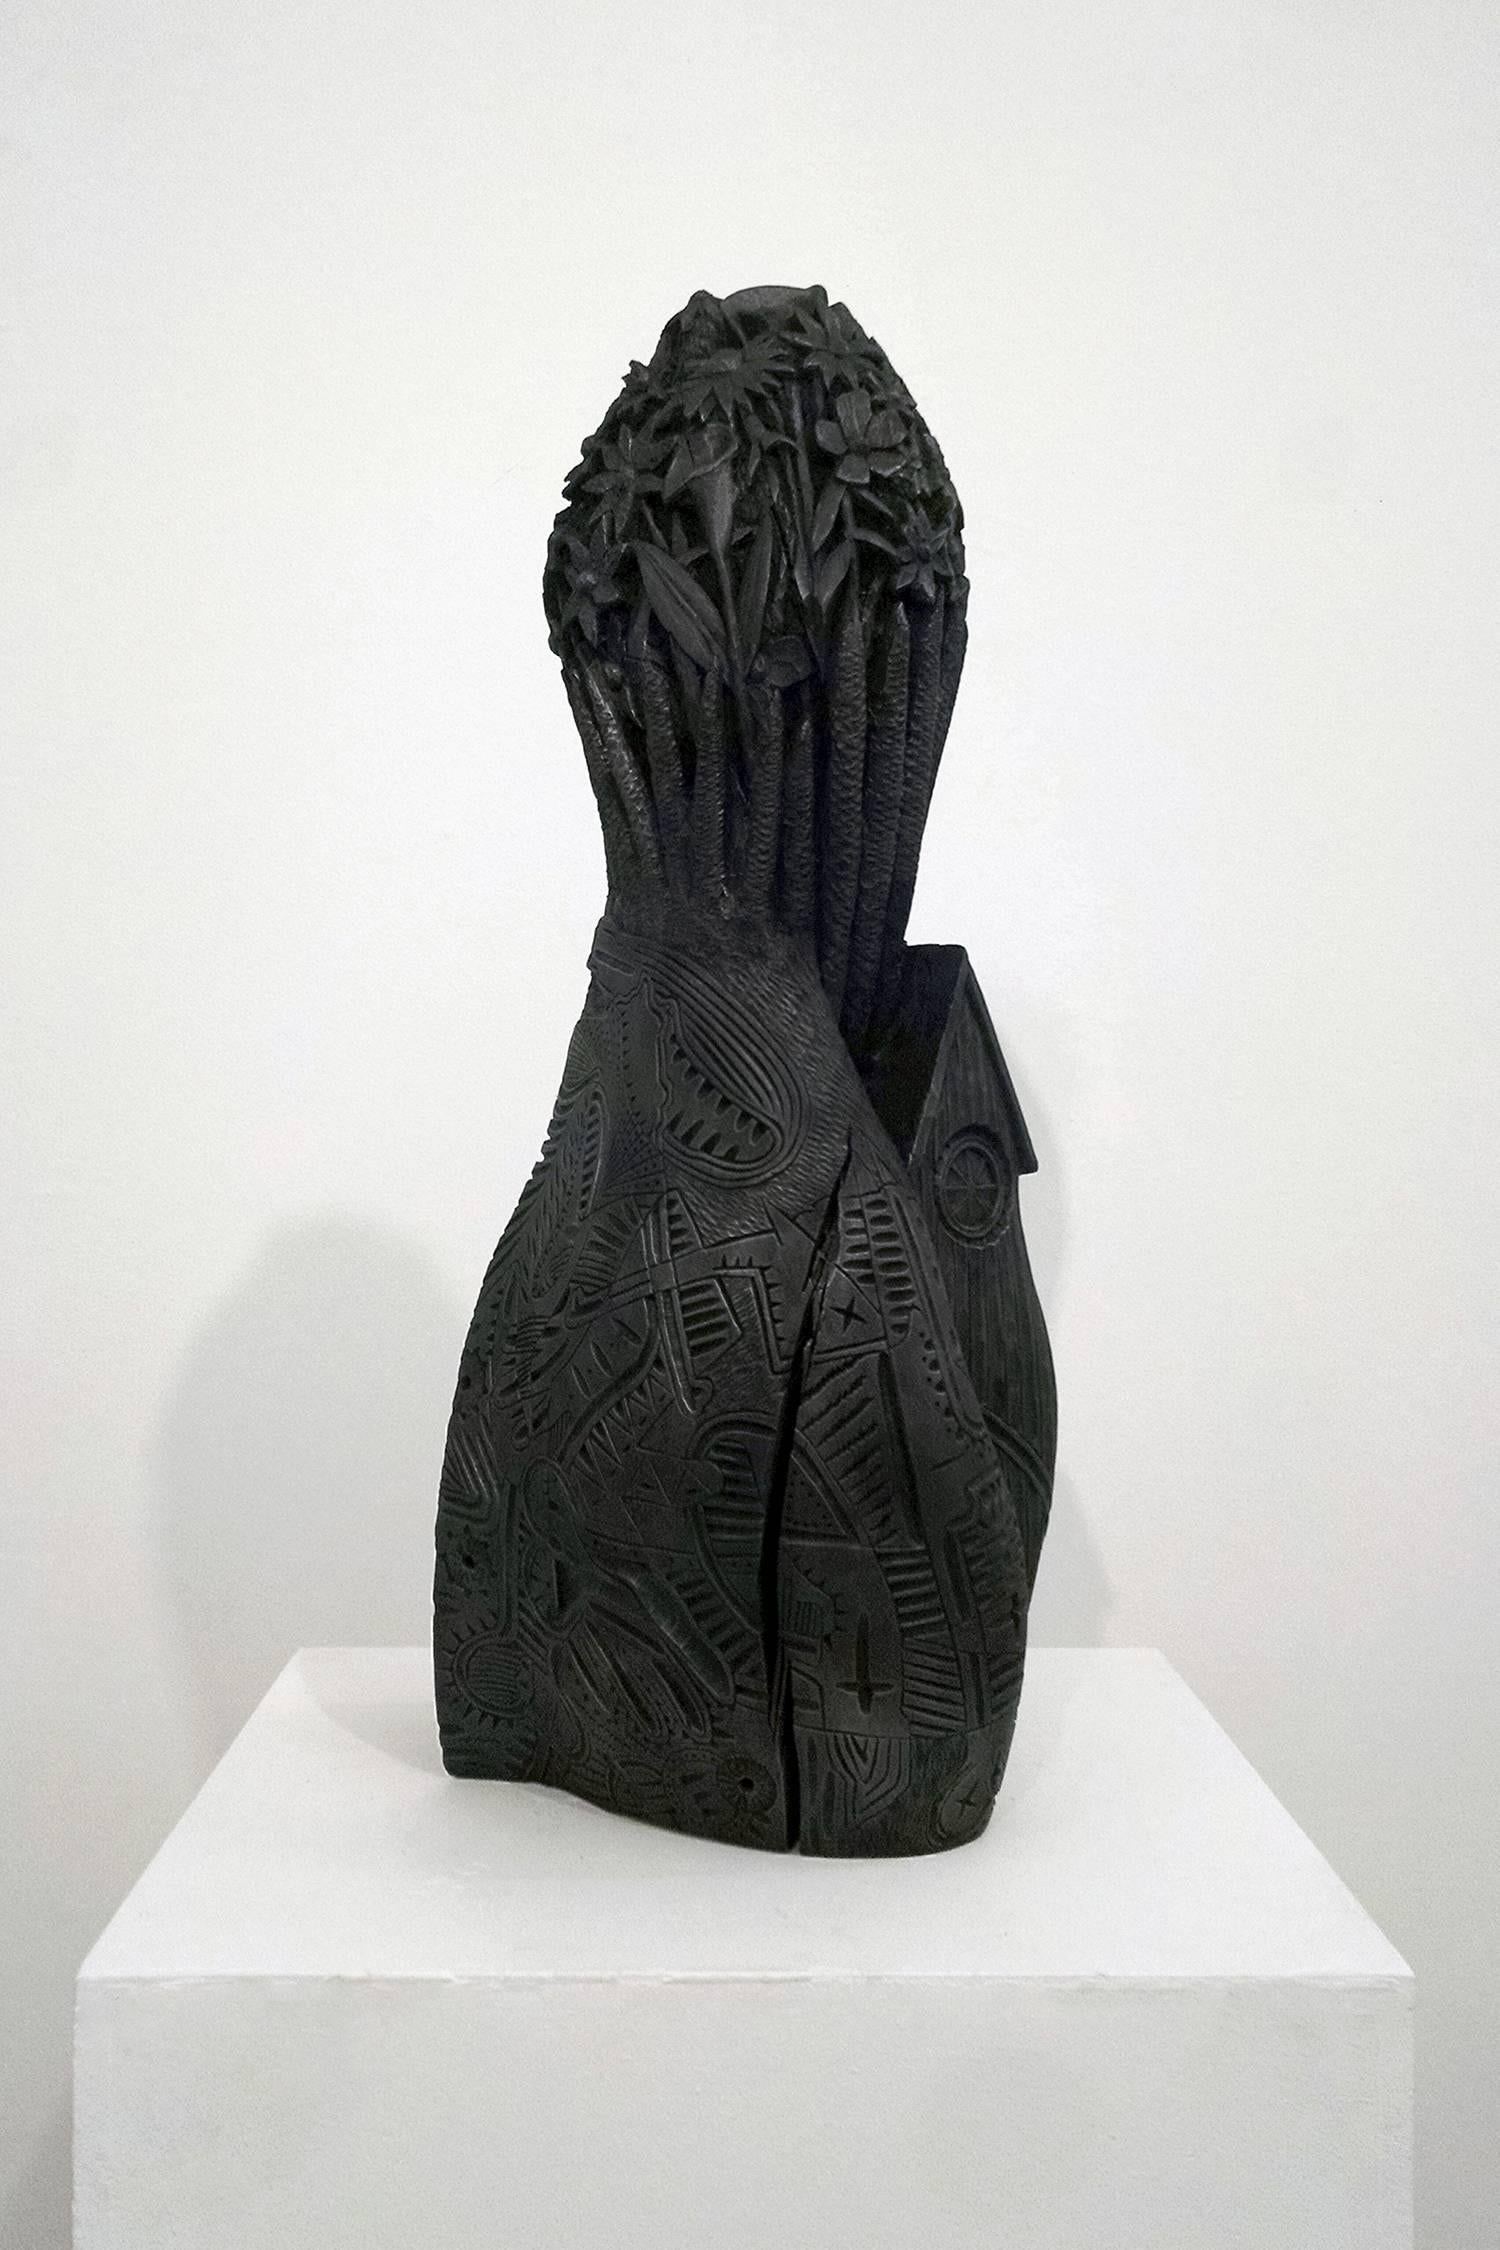 Aaron Spangler Figurative Sculpture - Untitled